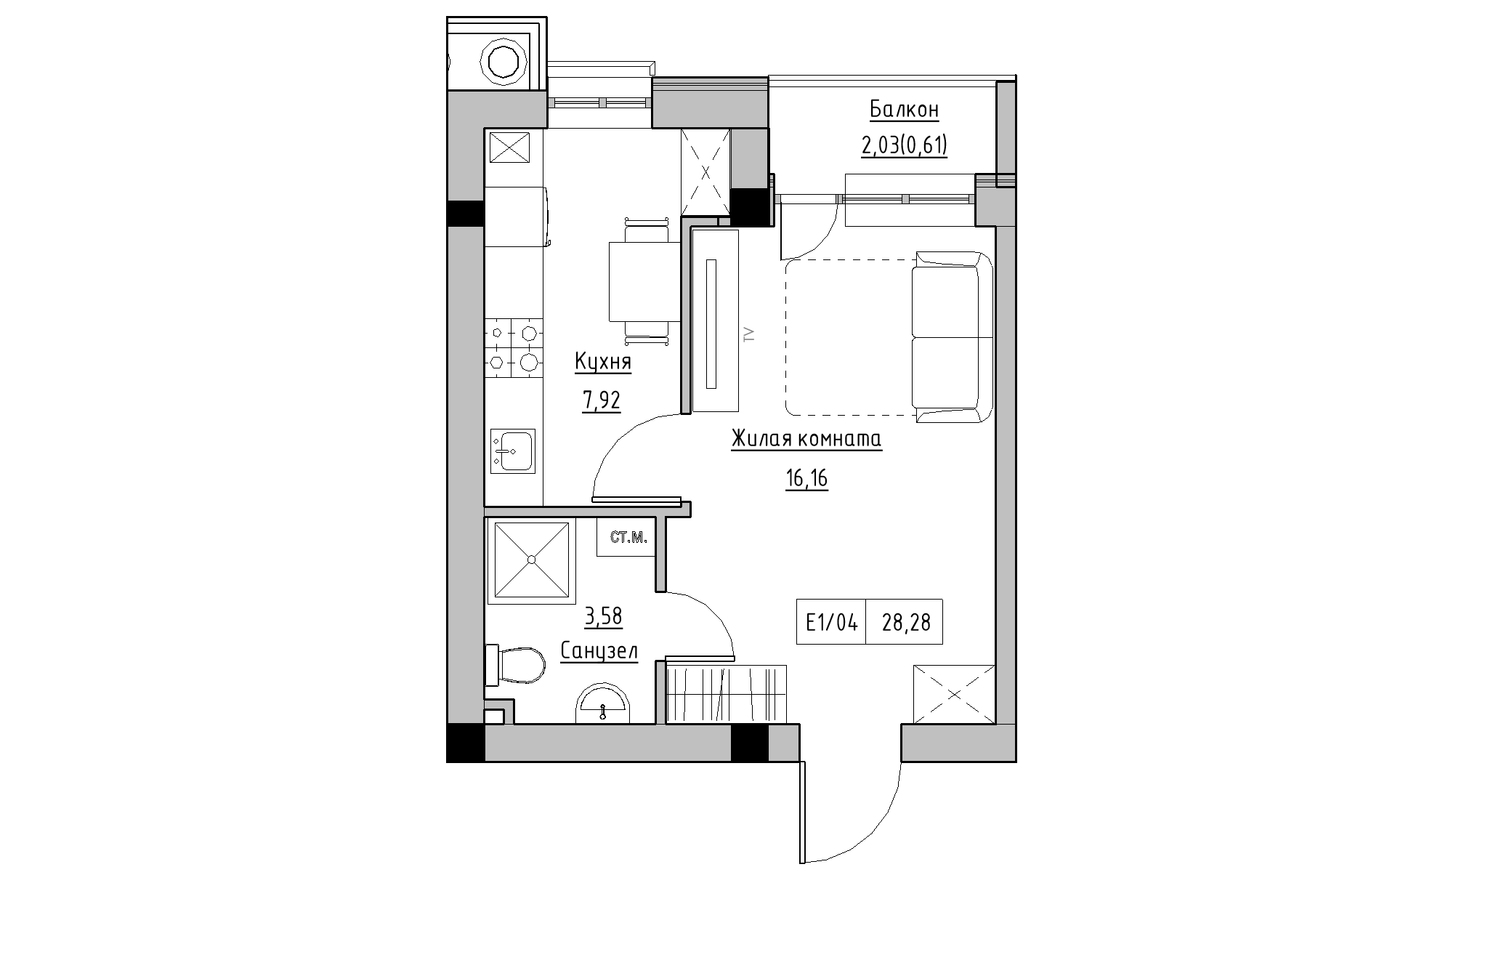 Планування 1-к квартира площею 27.55м2, KS-010-05/0007.